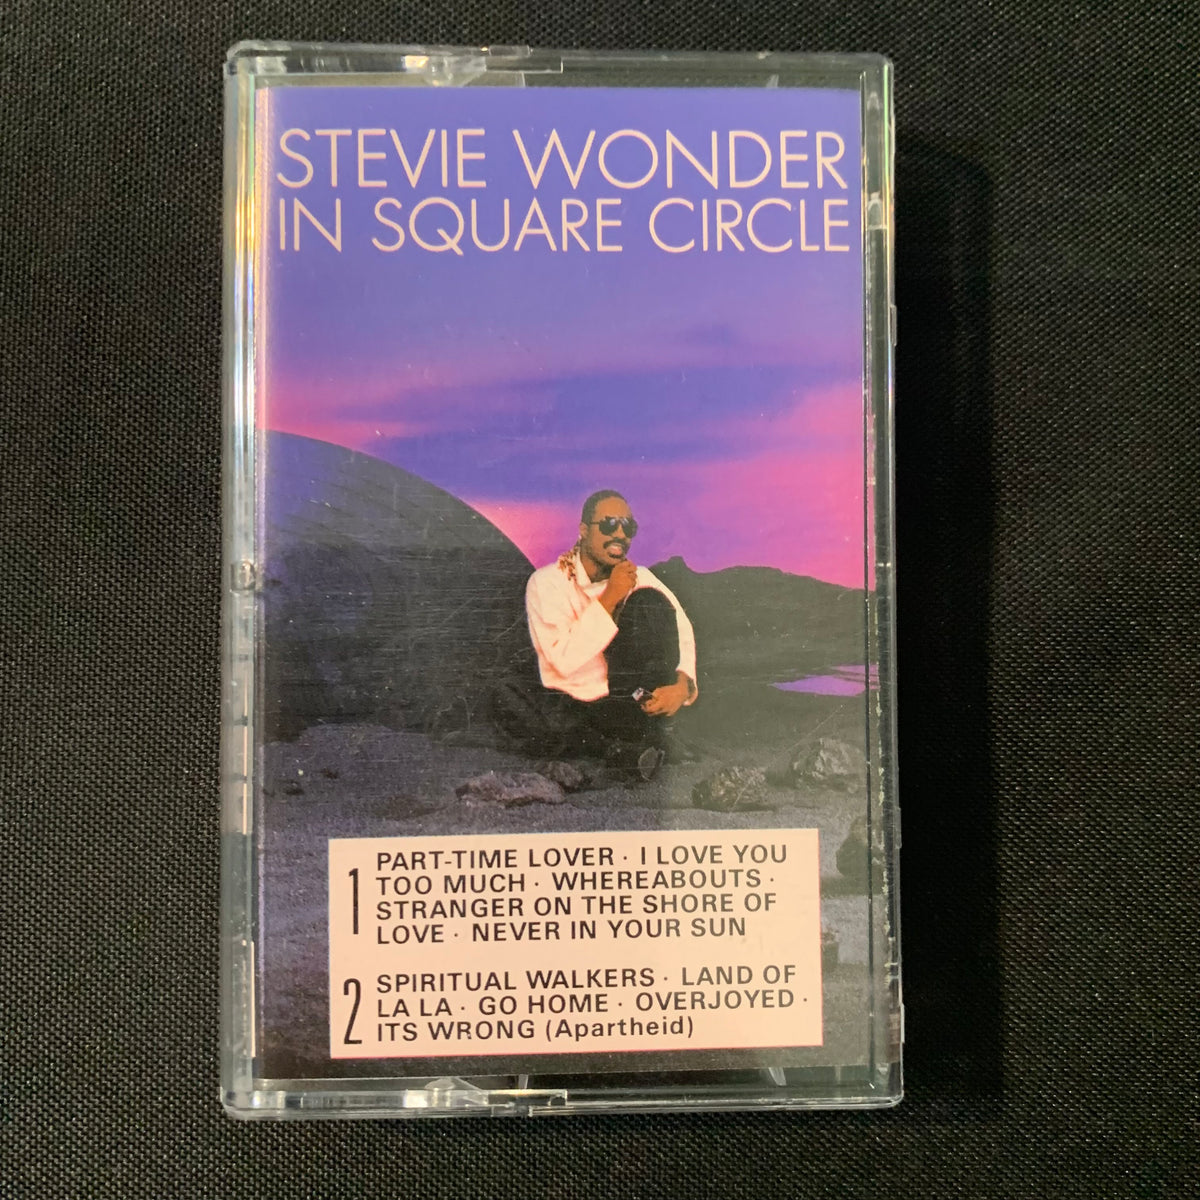 Overjoyed – Stevie Wonder